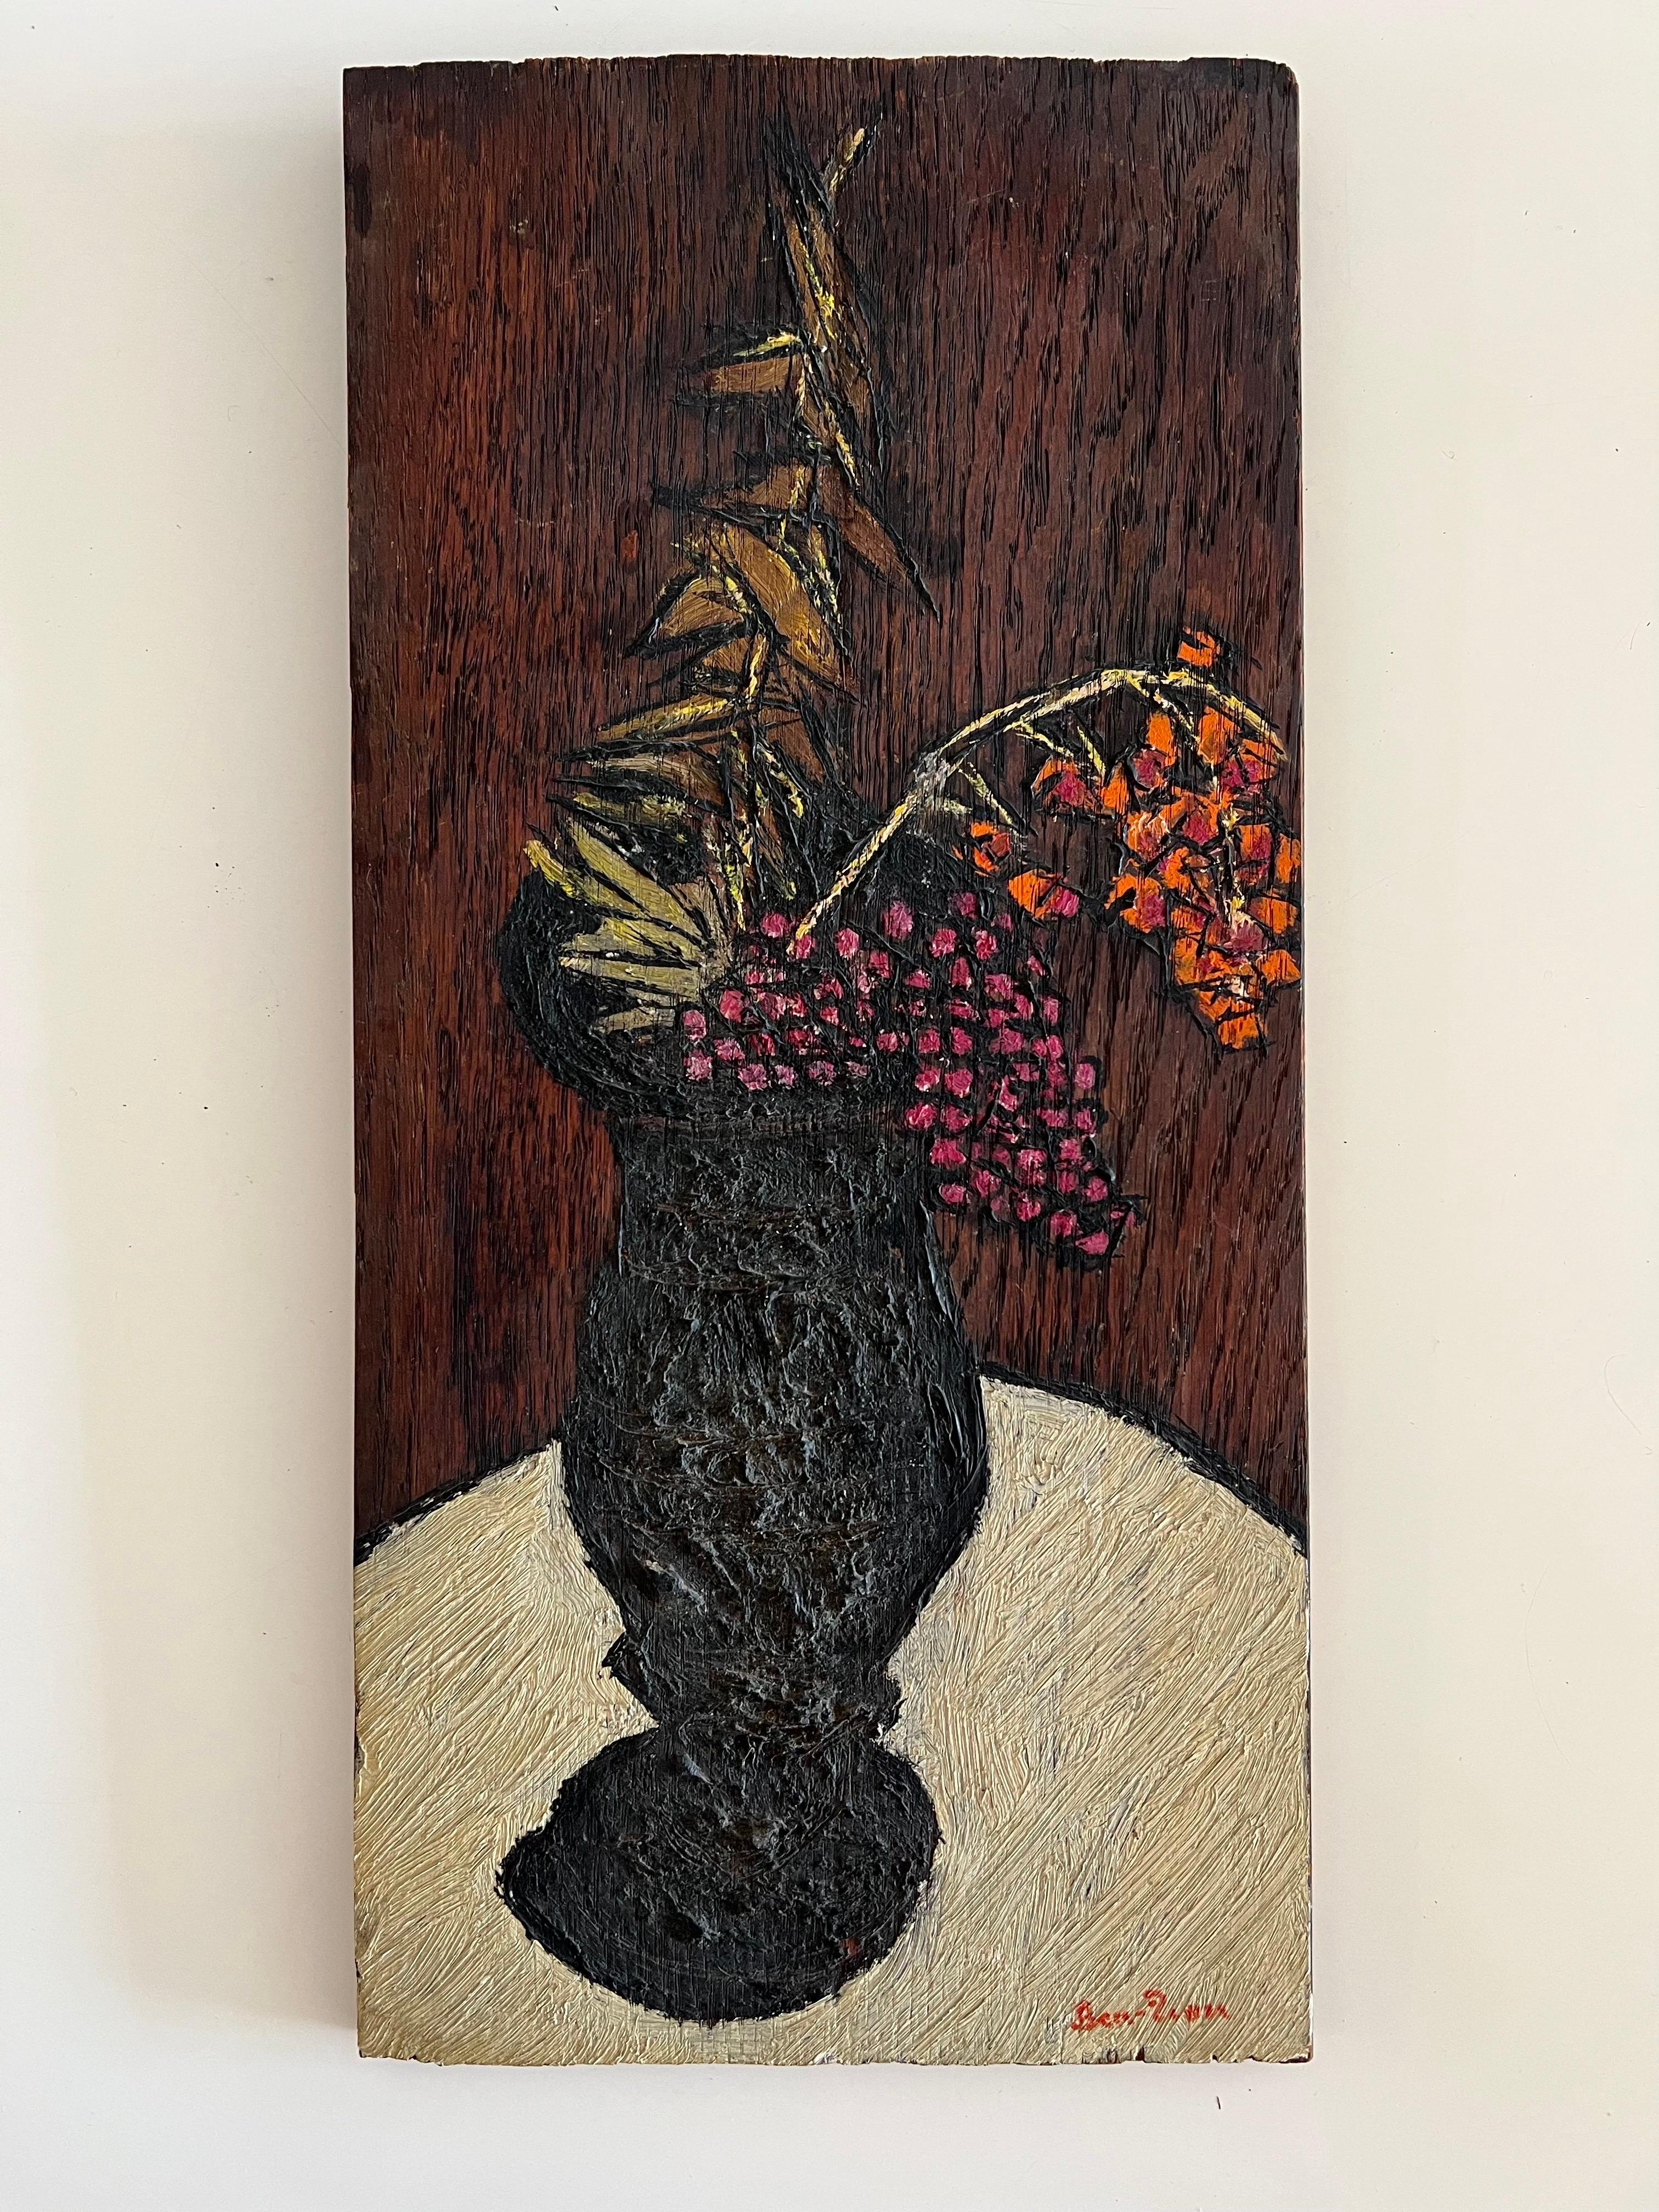 Amerikanische Modernist Ölgemälde Expressionist Vase, Blumen WPA Künstler Ben ZIon (Expressionismus), Painting, von Ben-Zion Weinman